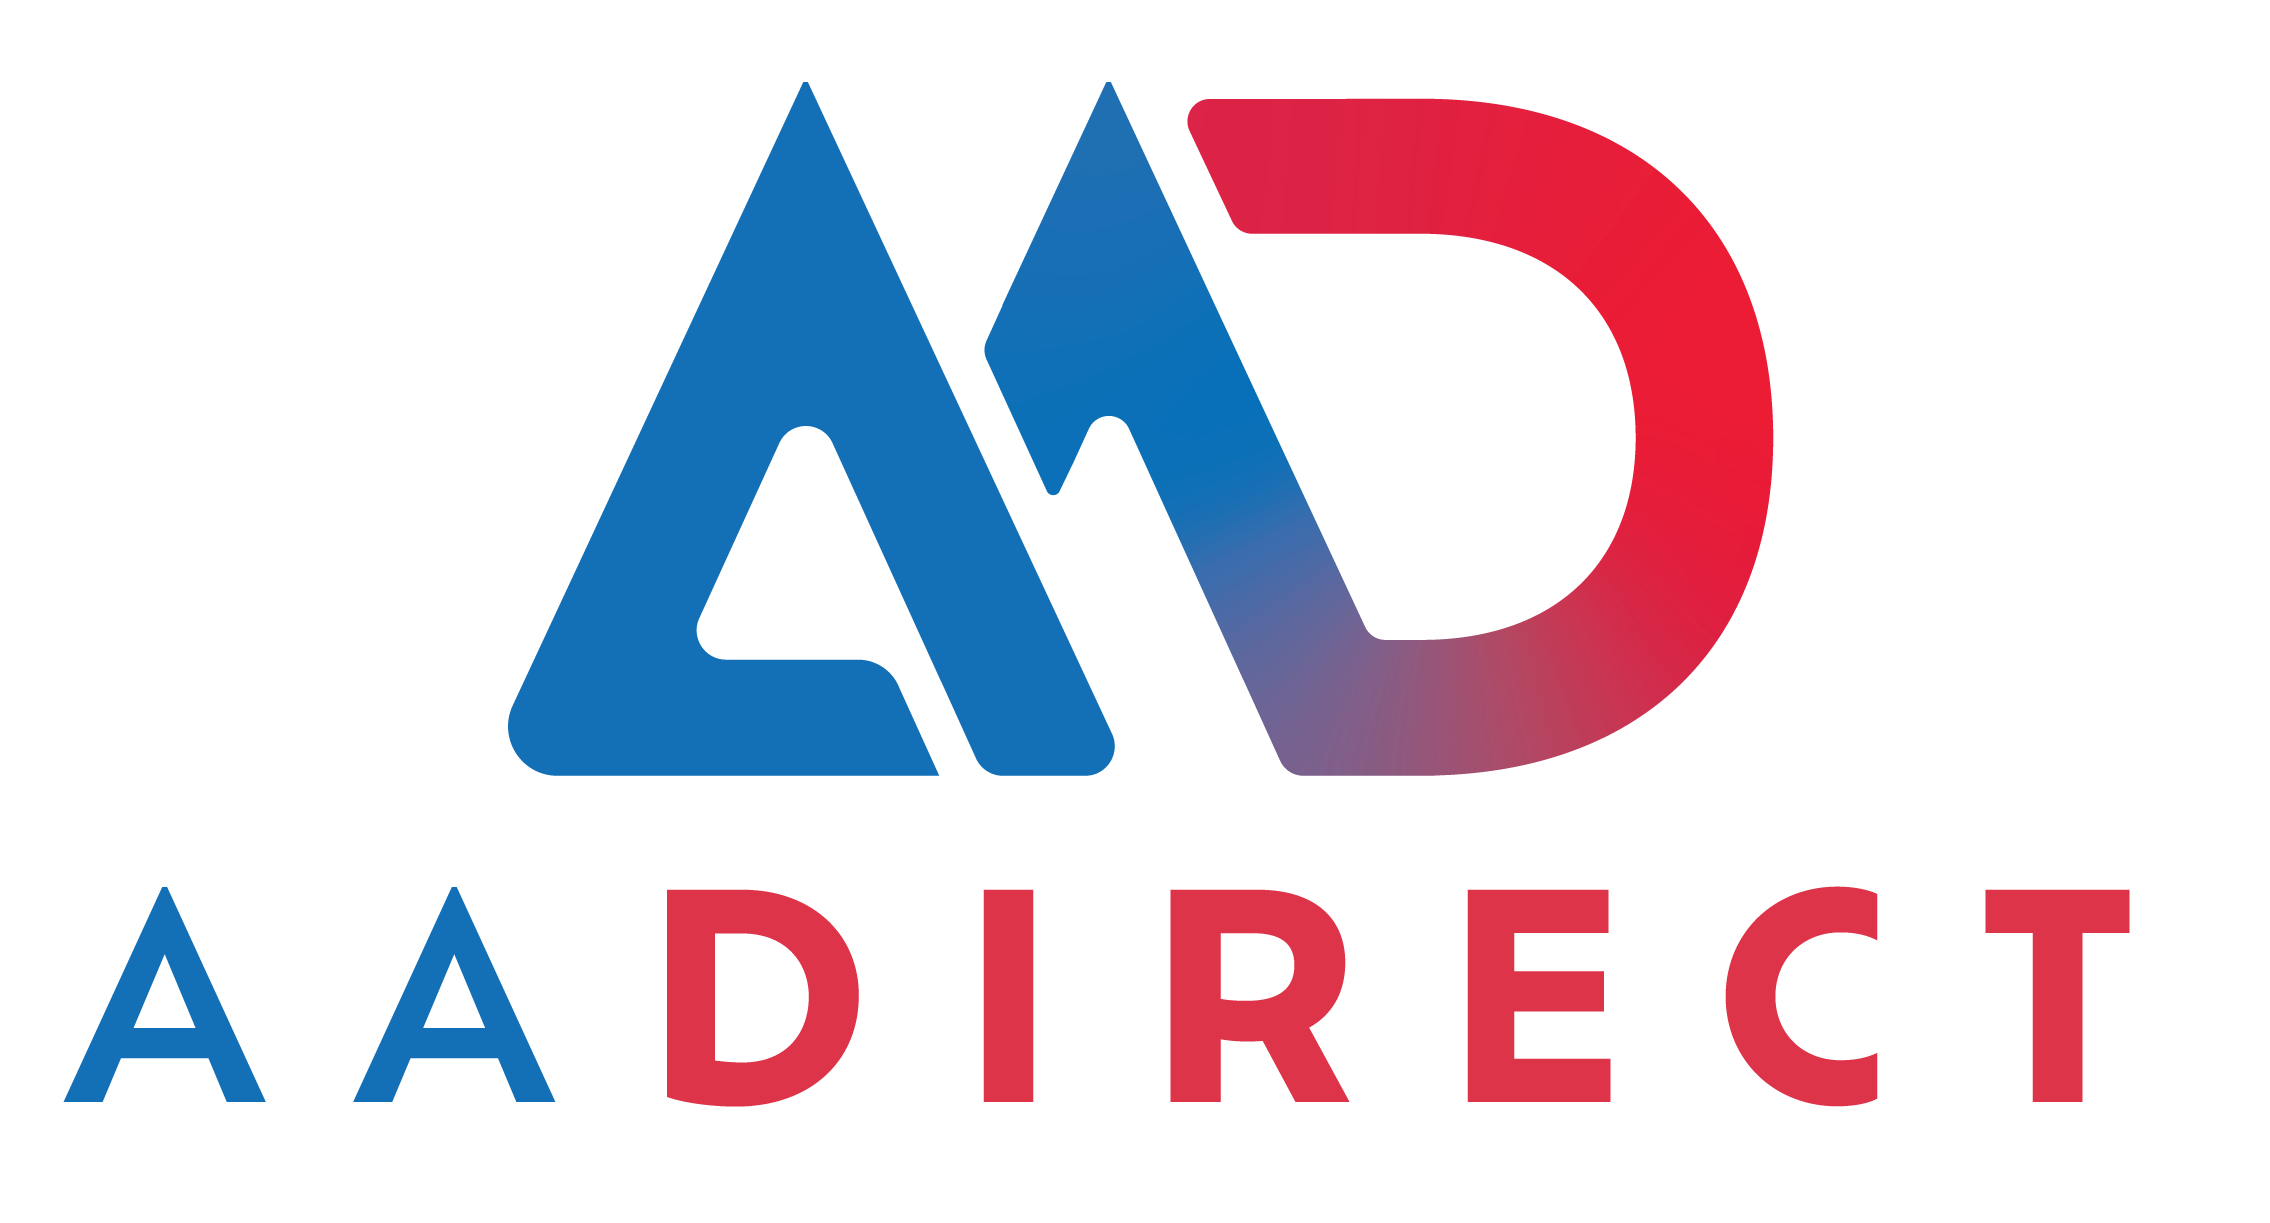 AADirect